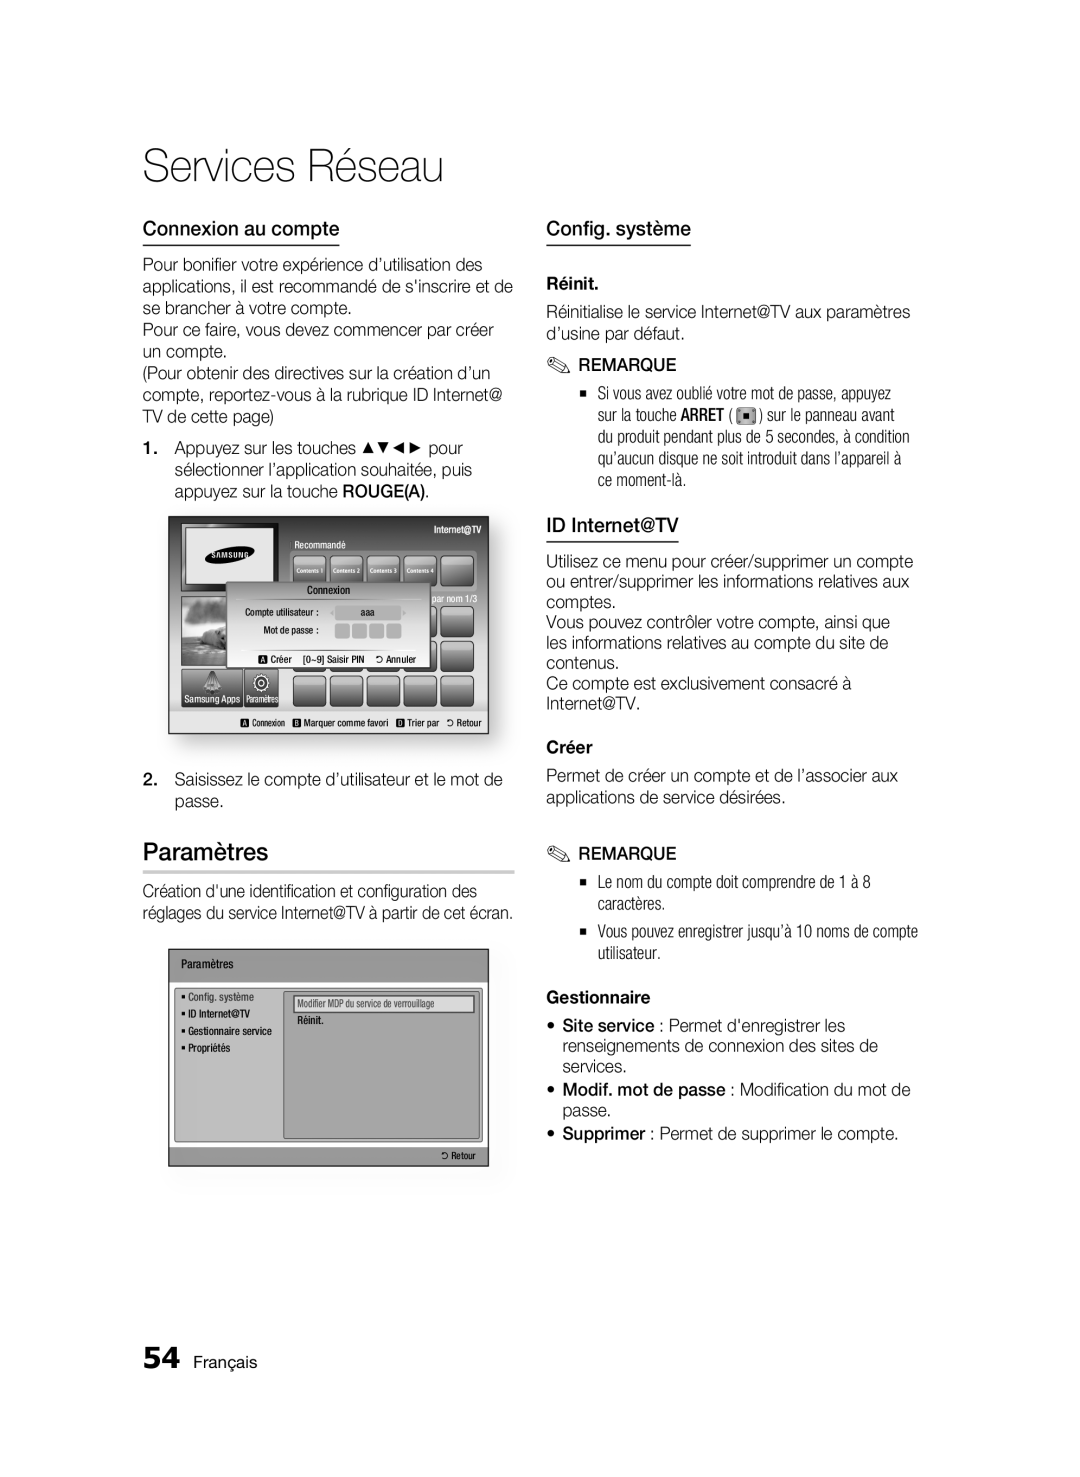 Samsung BD-C6300 user manual Paramètres, Connexion au compte, Config. système, ID Internet@TV, Réinit, Créer, Gestionnaire 